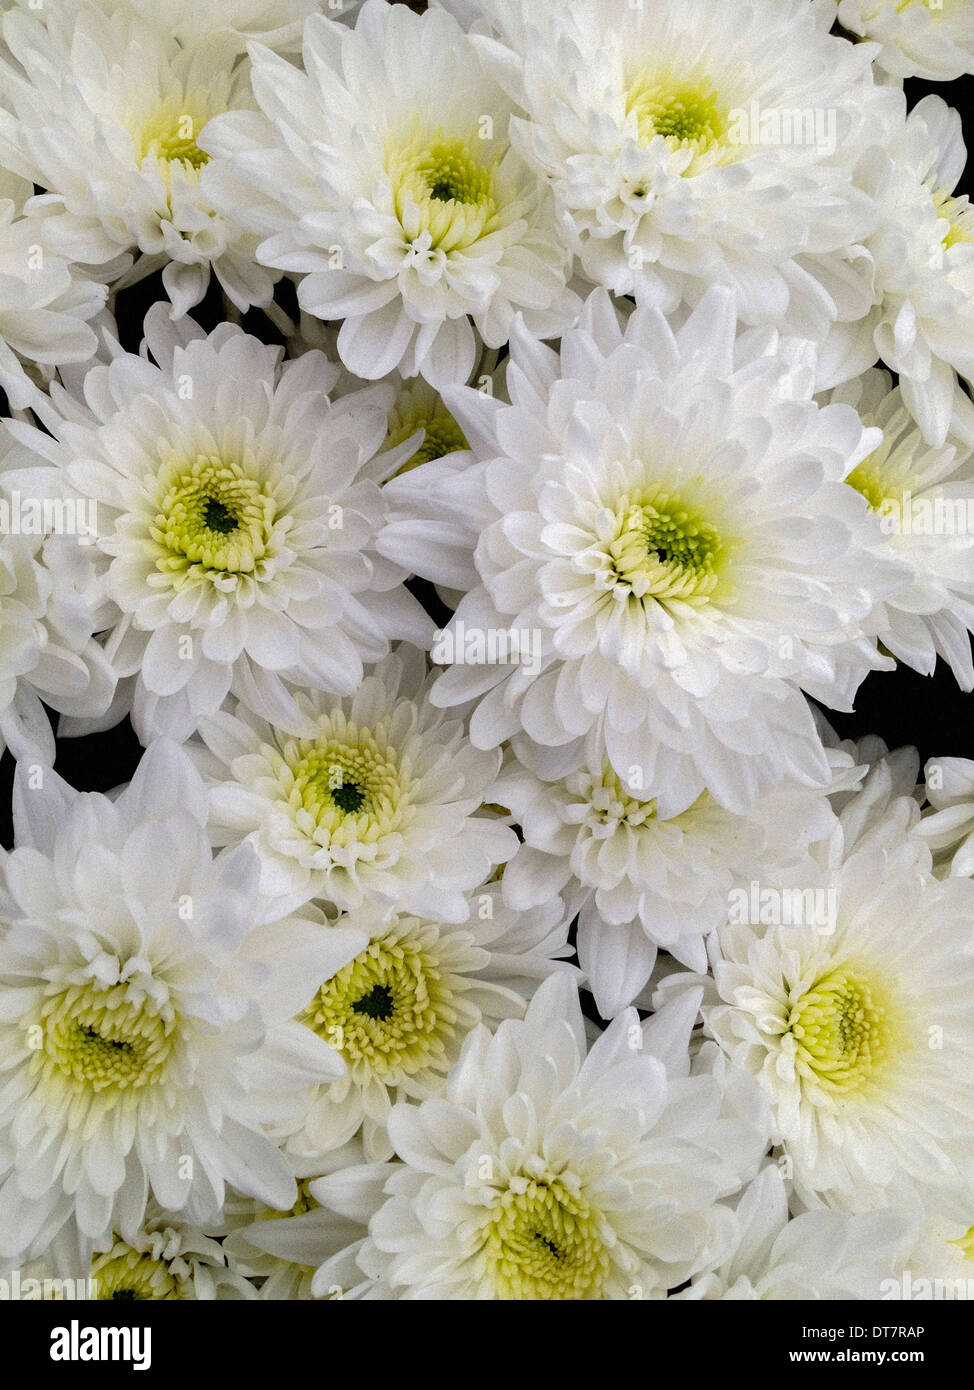 Chrysanthemum 'Careless' Stock Photo